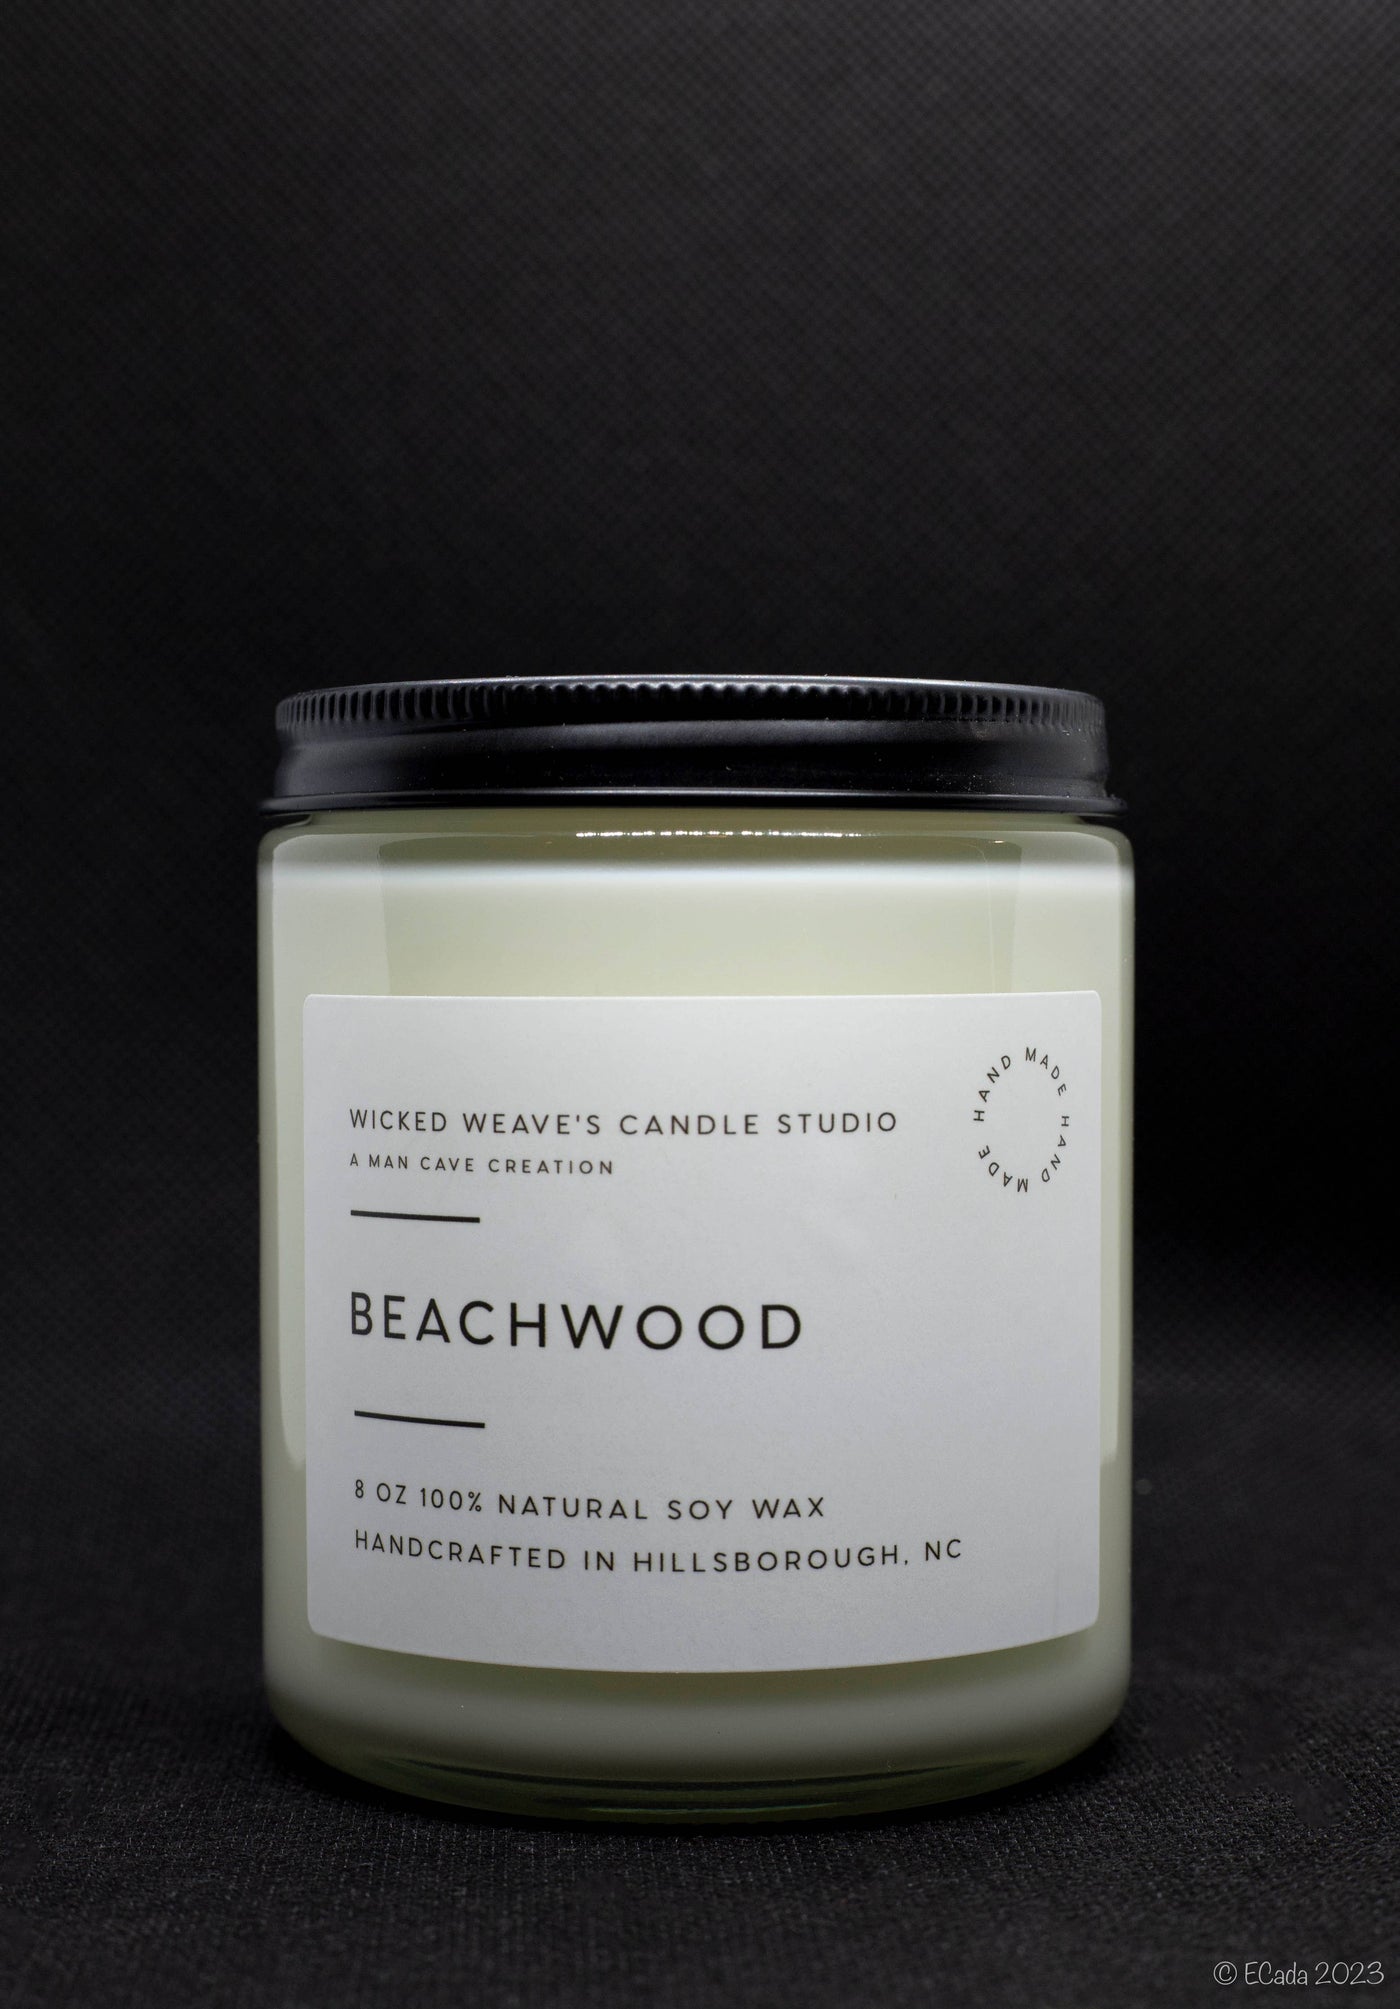 Beachwood Soy 4oz Jar Candle